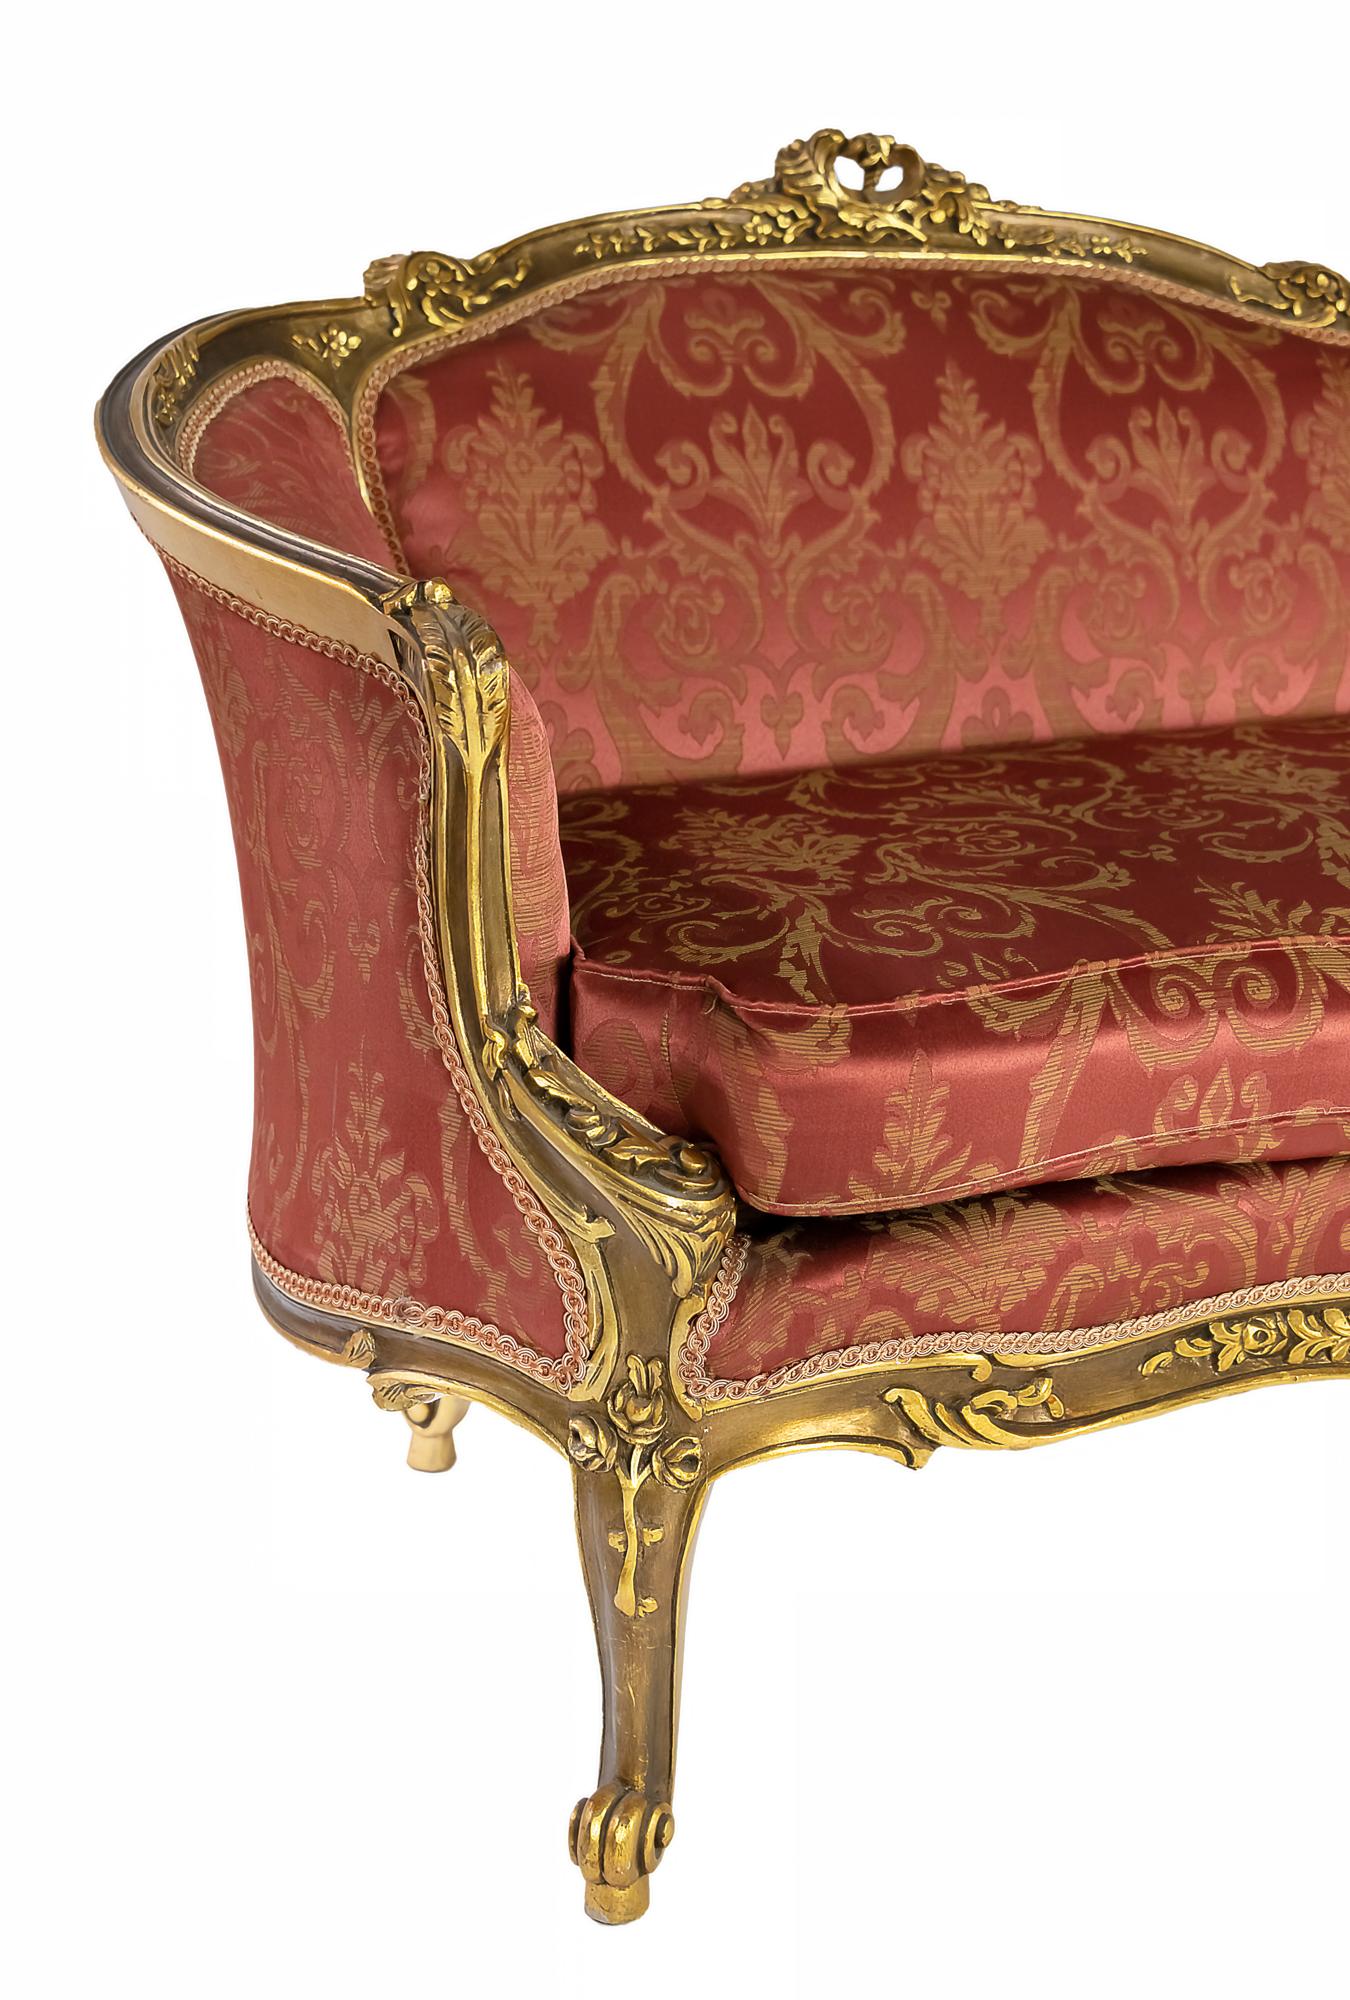 Französisches handgefertigtes und vergoldetes Holzliegesofa um 1950.
Das Sofa ist mit einem rot-goldenen Damastmuster gepolstert.
In sehr gutem Vintage-Zustand.